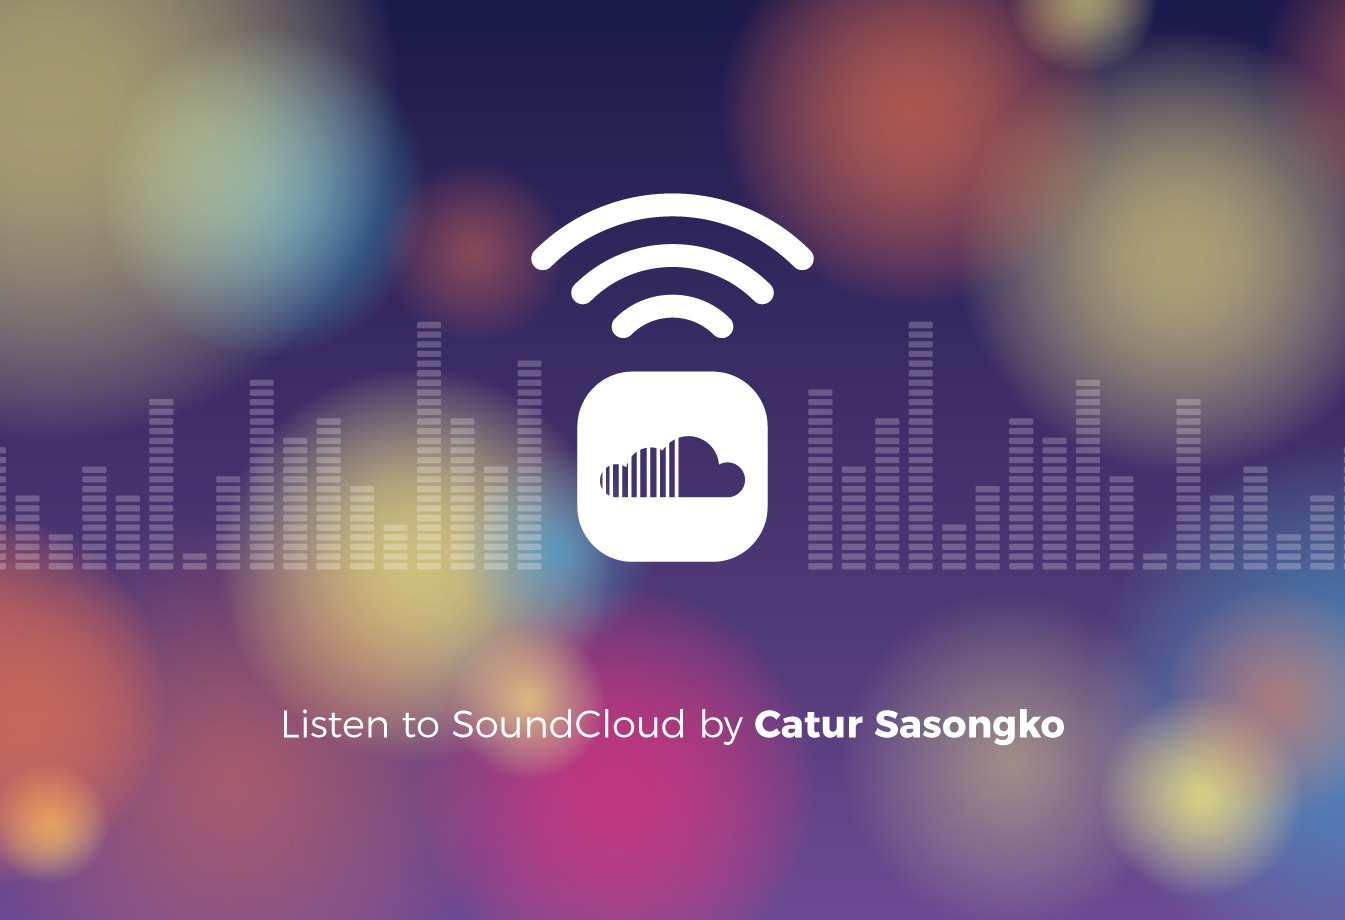 Listen to Mensiasati Keuangan Keluarga di Saat Kondisi Sulit Saat Ini by Catur Sasongko on SoundCloud